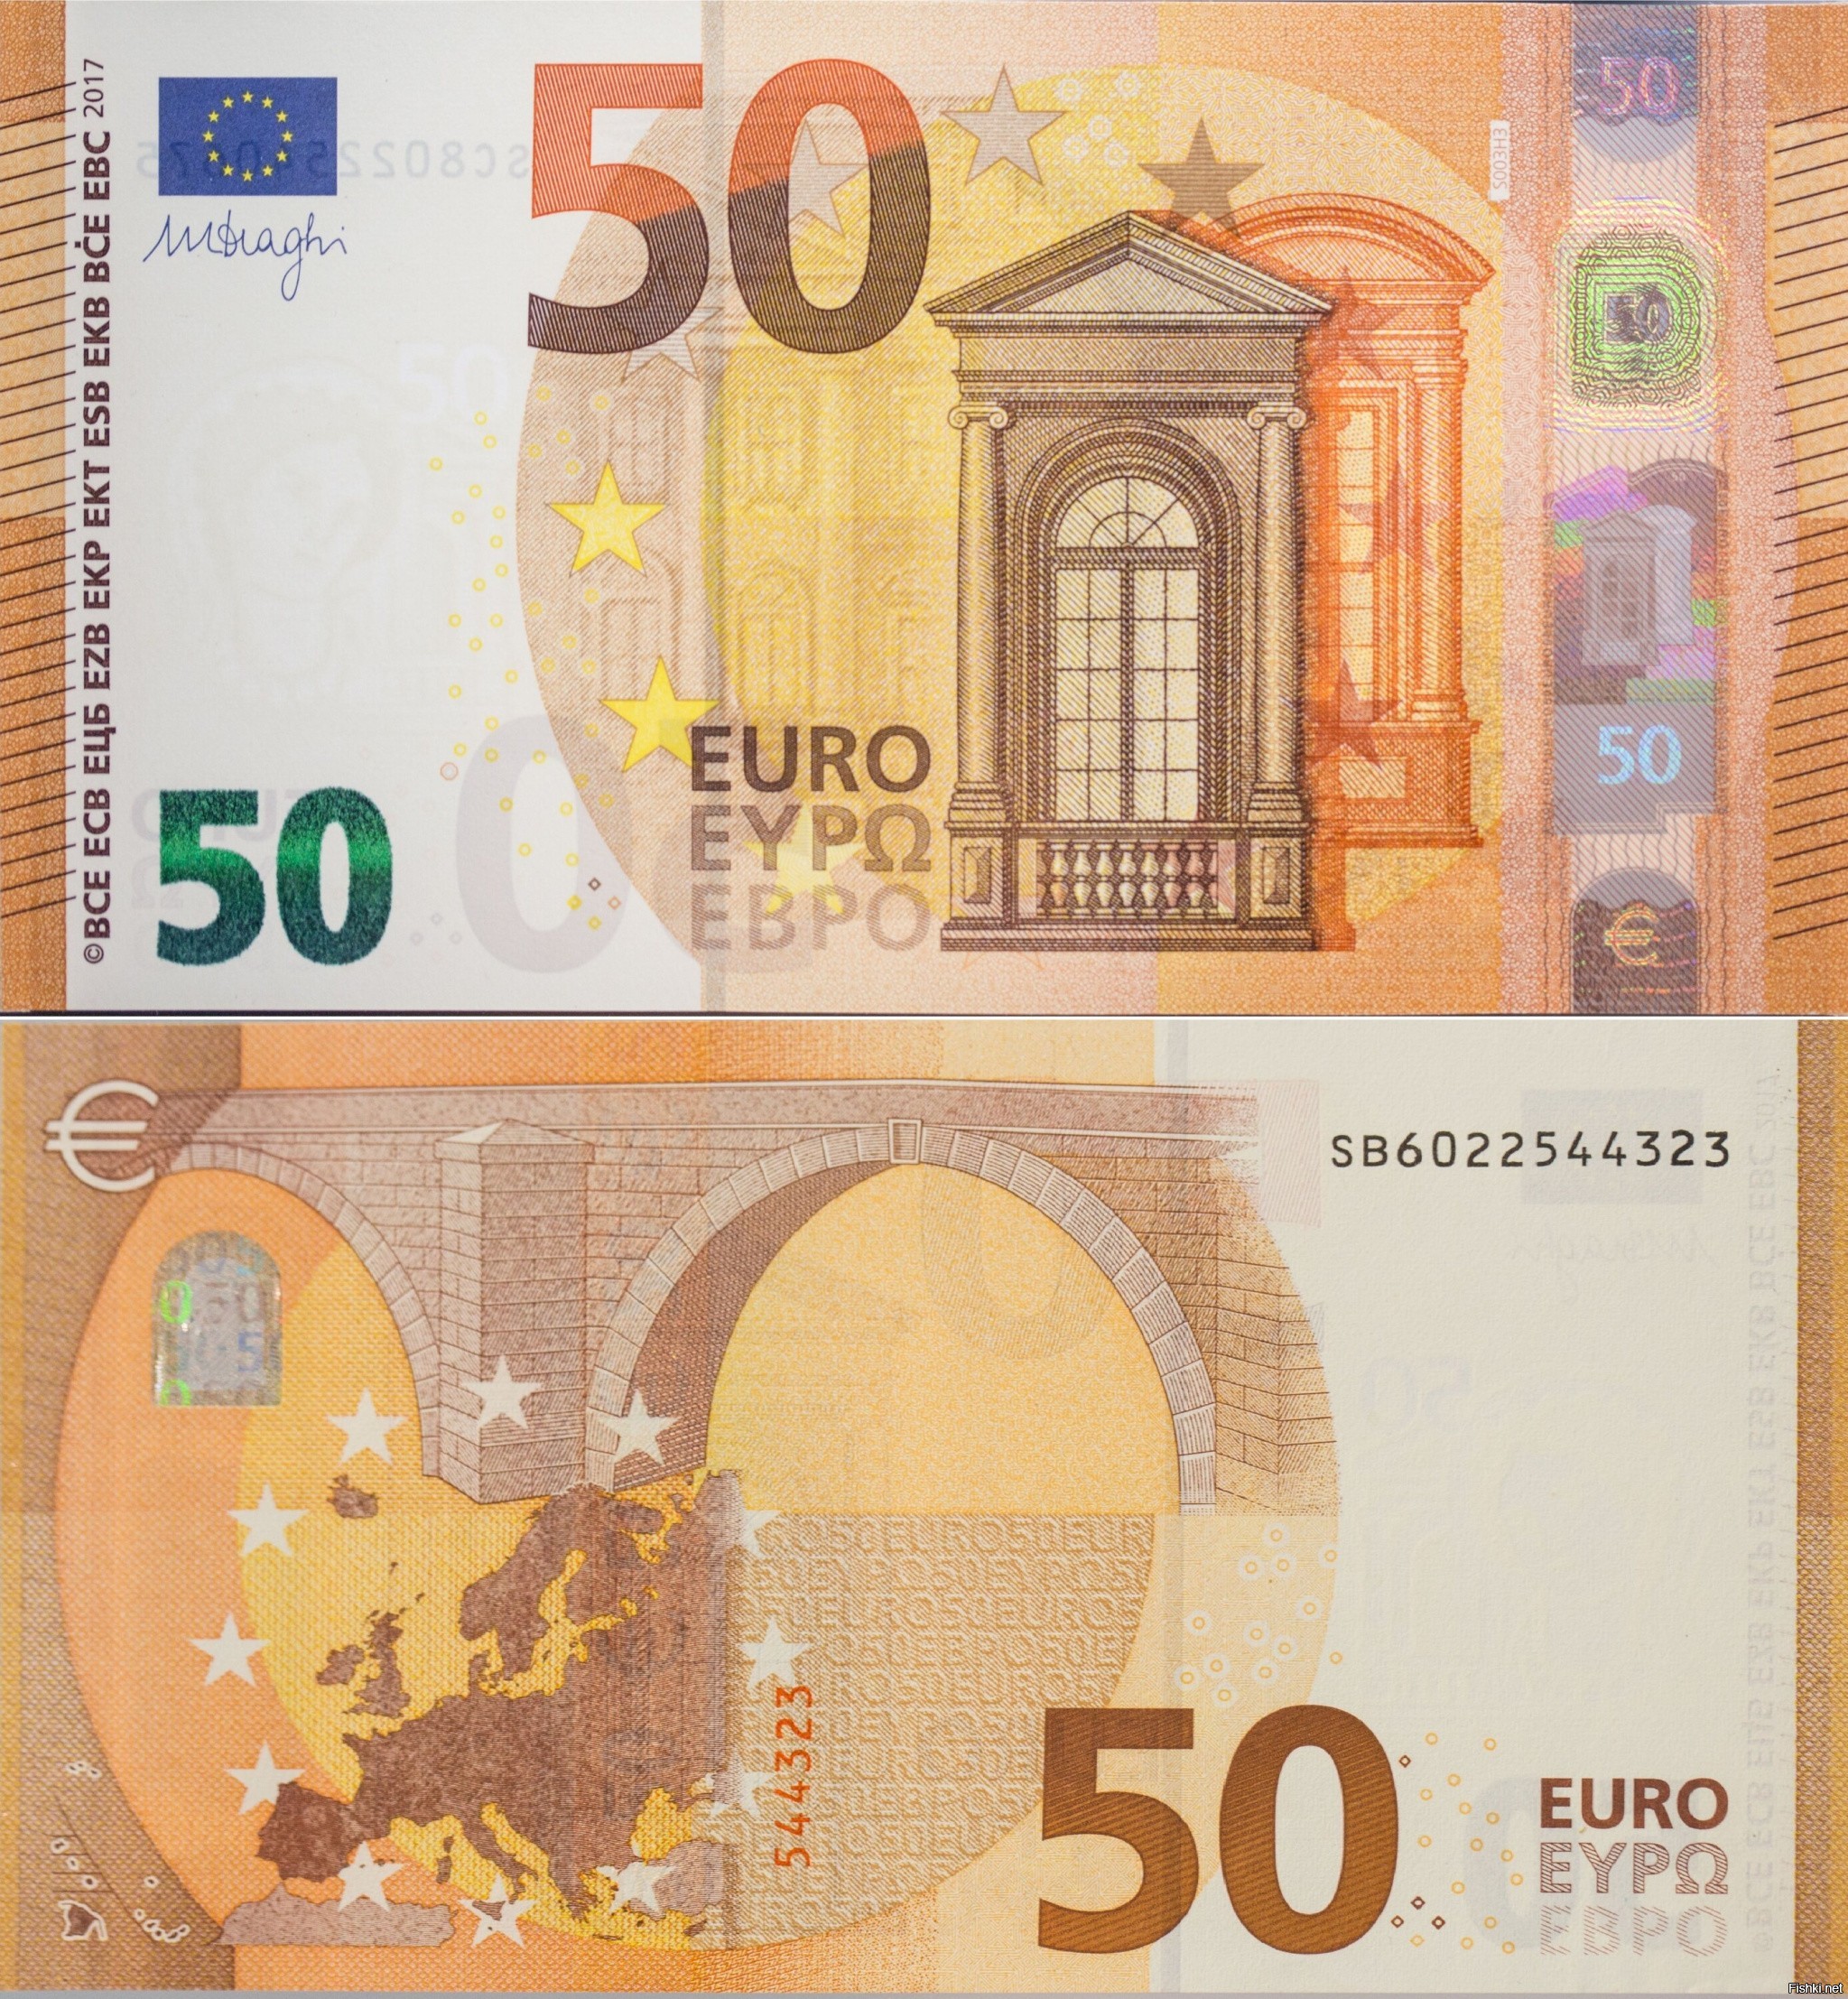 Настоящие пятьдесят. Банкноты 50 евро. Банкноты евро нового образца 50 евро. 50 Евро купюра 2017. Как выглядит банкнота 50 евро.